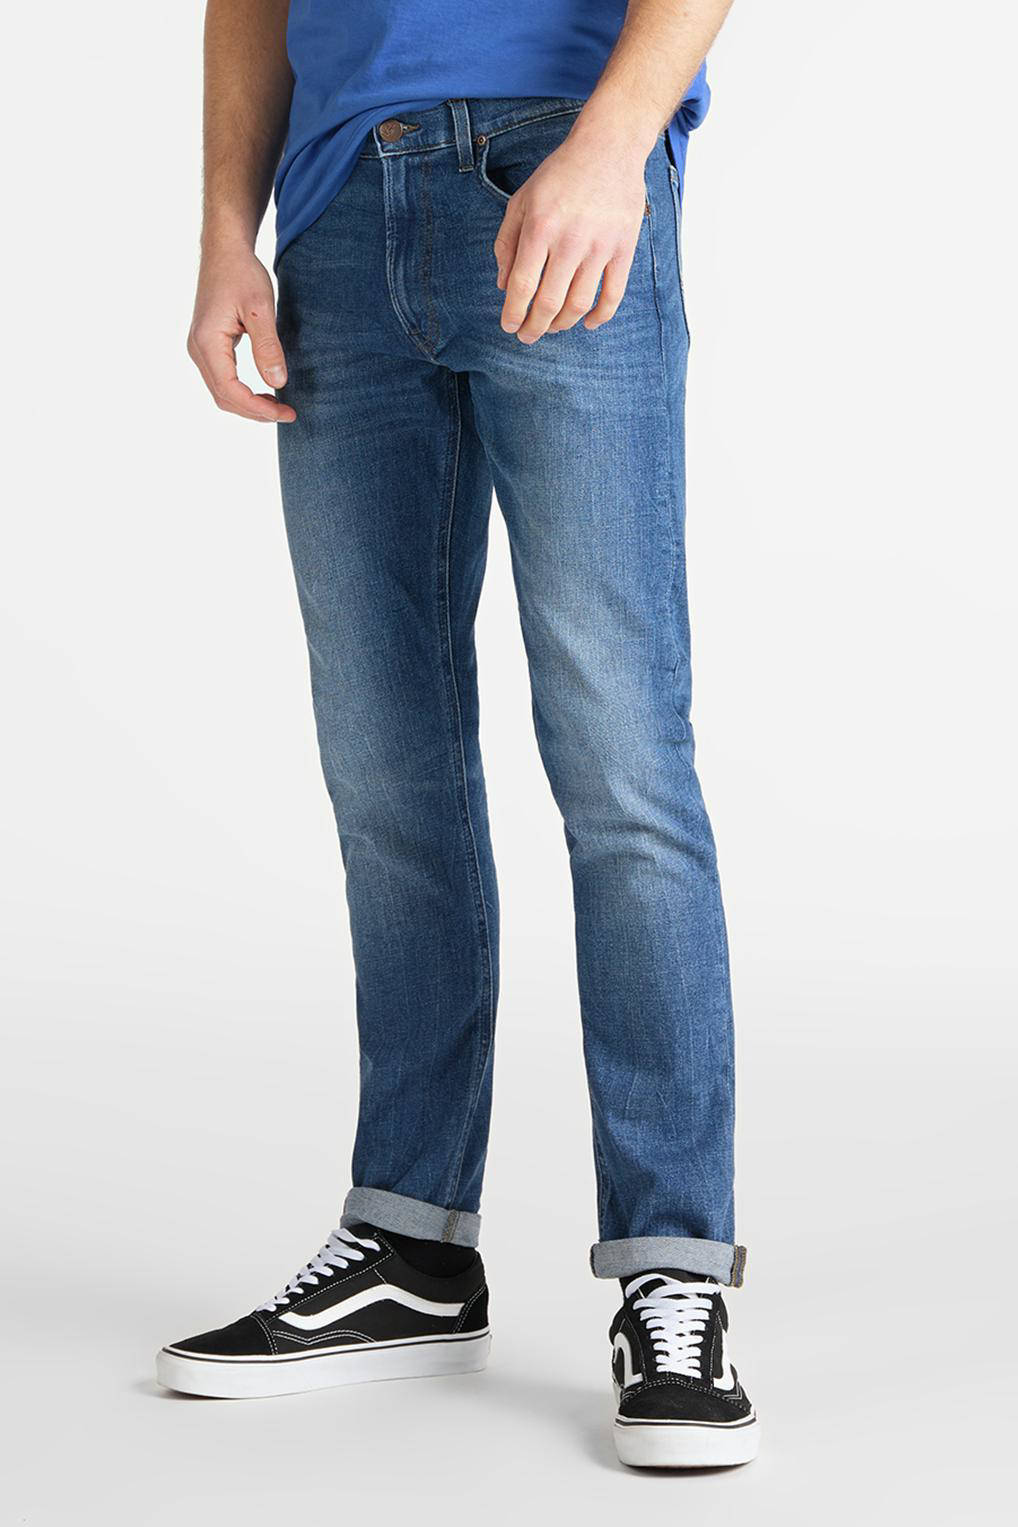 Bespaar 15% Lee Jeans Denim Skinny Jeans Arvin L732cdjx in het Blauw voor heren Heren Kleding voor voor Jeans voor Skinny jeans 